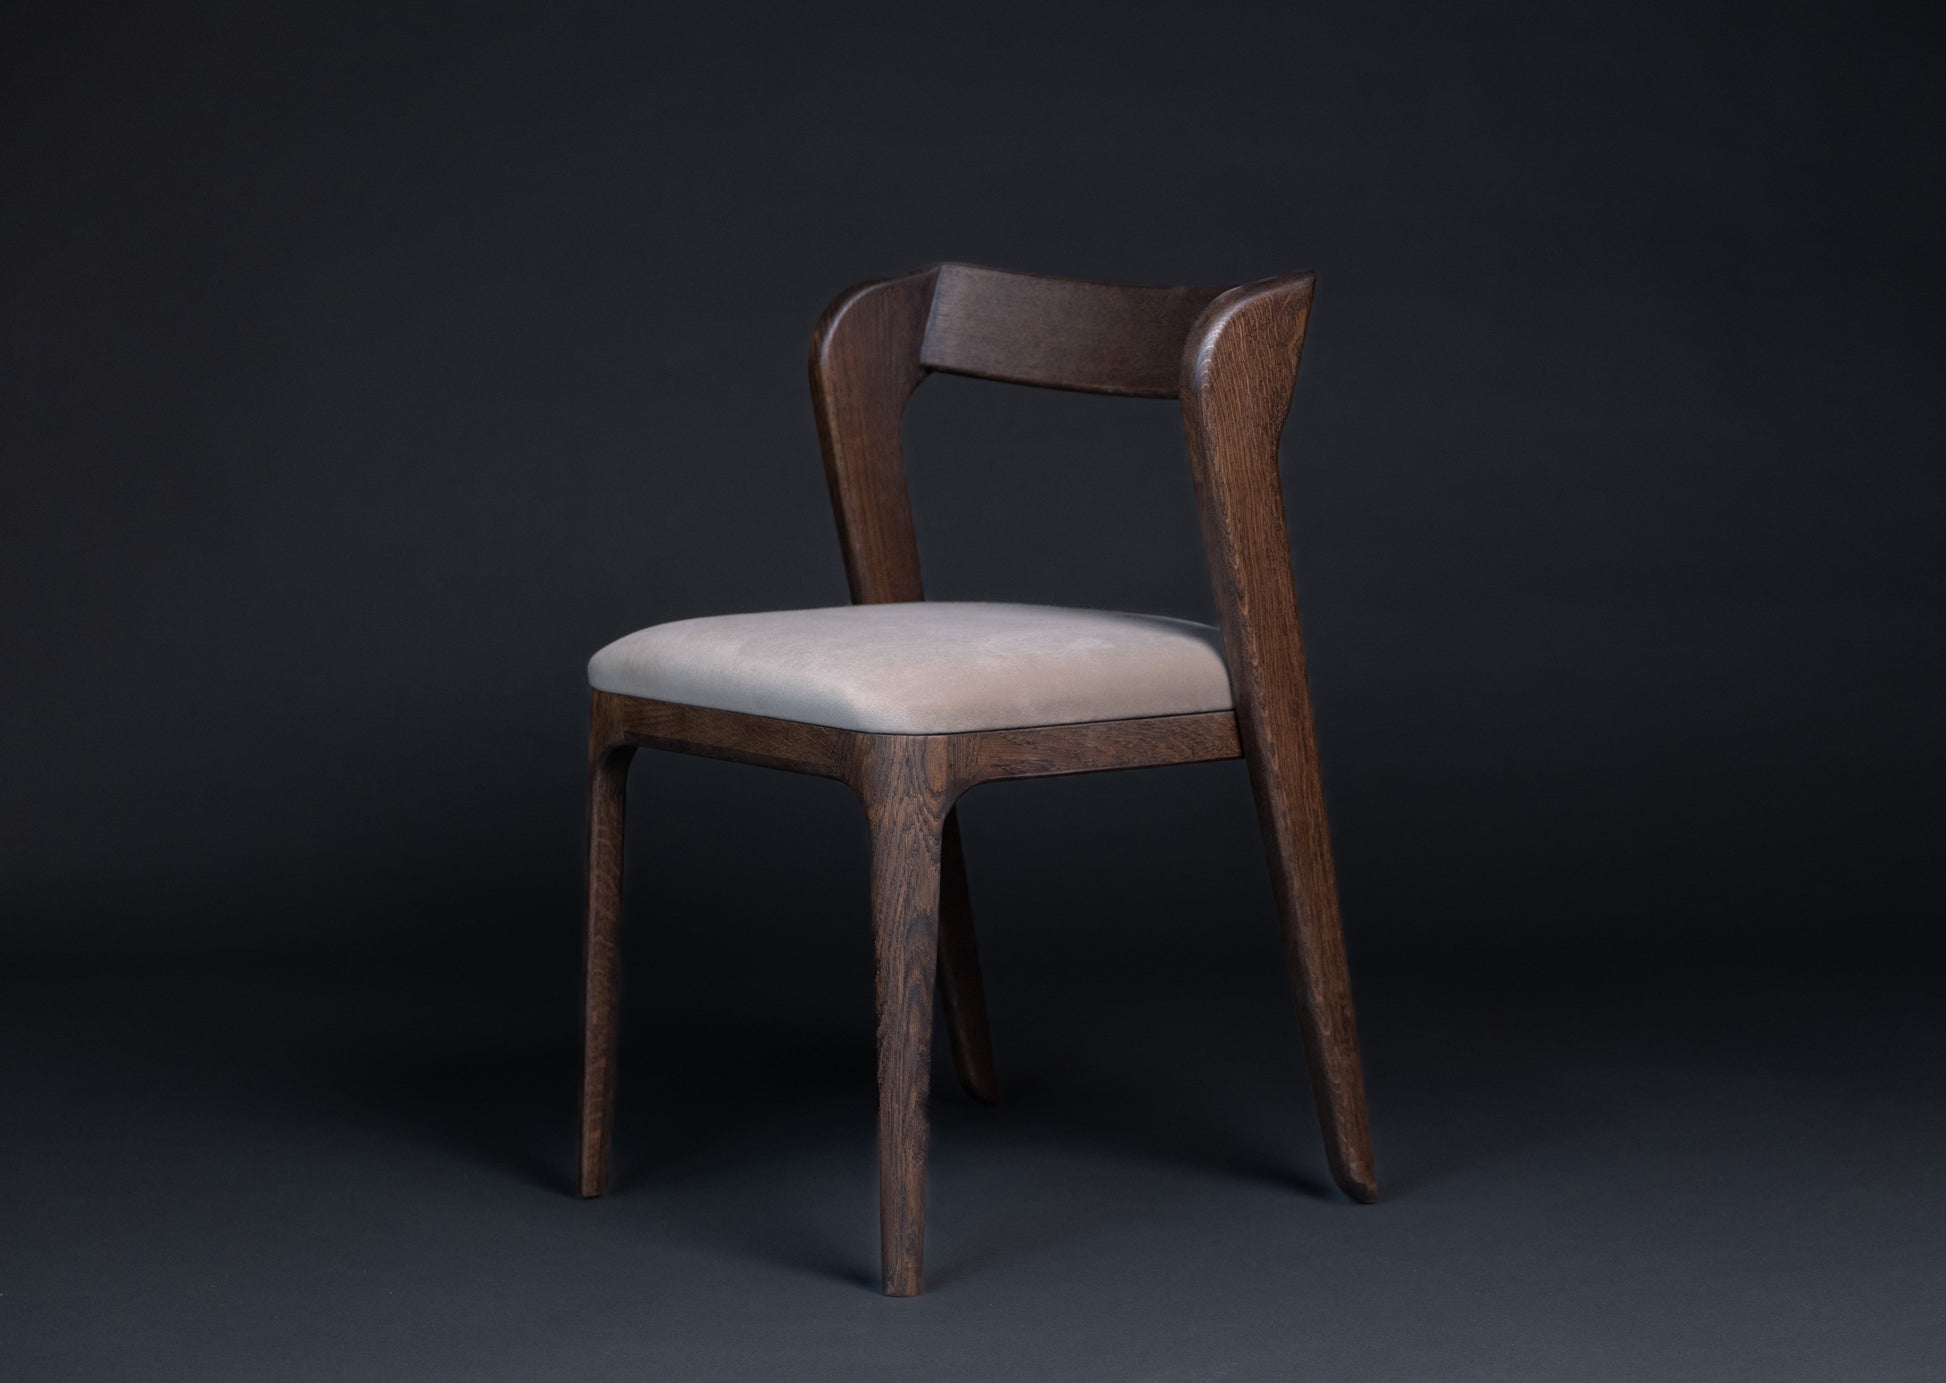 Stolen Vera er håndlaget i heltre eik som har et elegant eikmønster. Sittedelen er laget av tekstil.